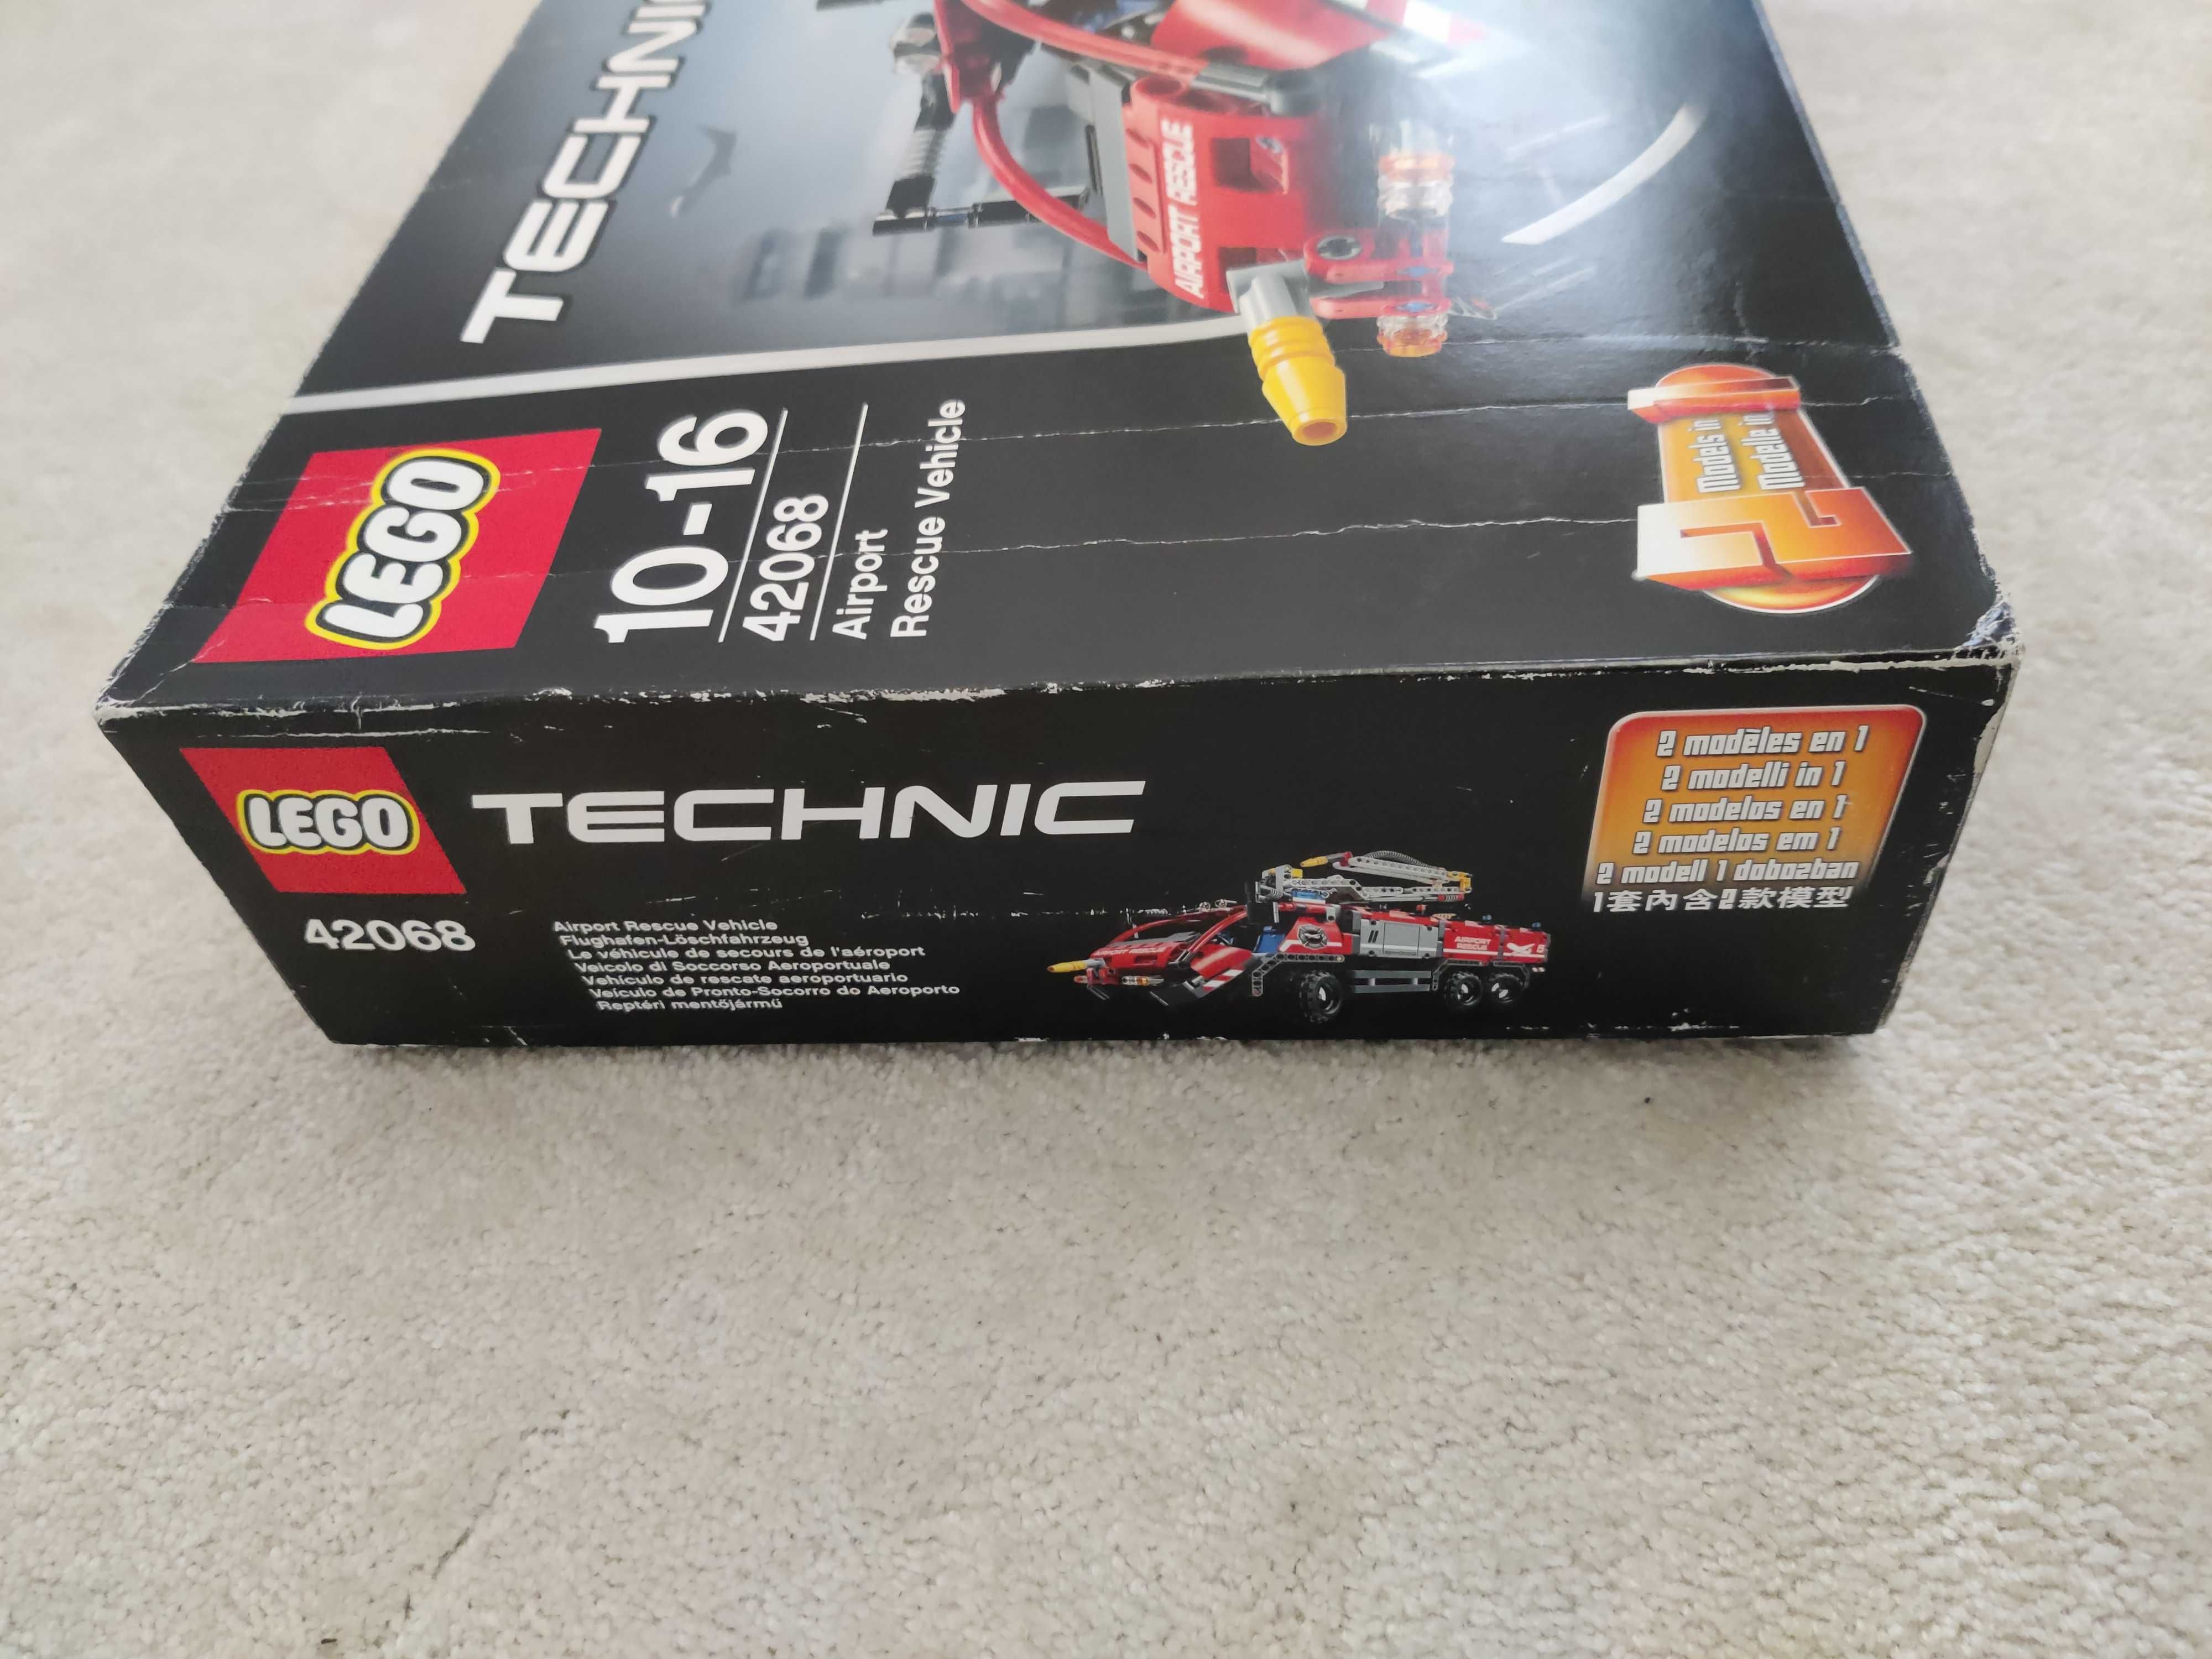 Lego TECHNIC - 42068 Airport Rescue Vehicle pojazd straży pożarnej